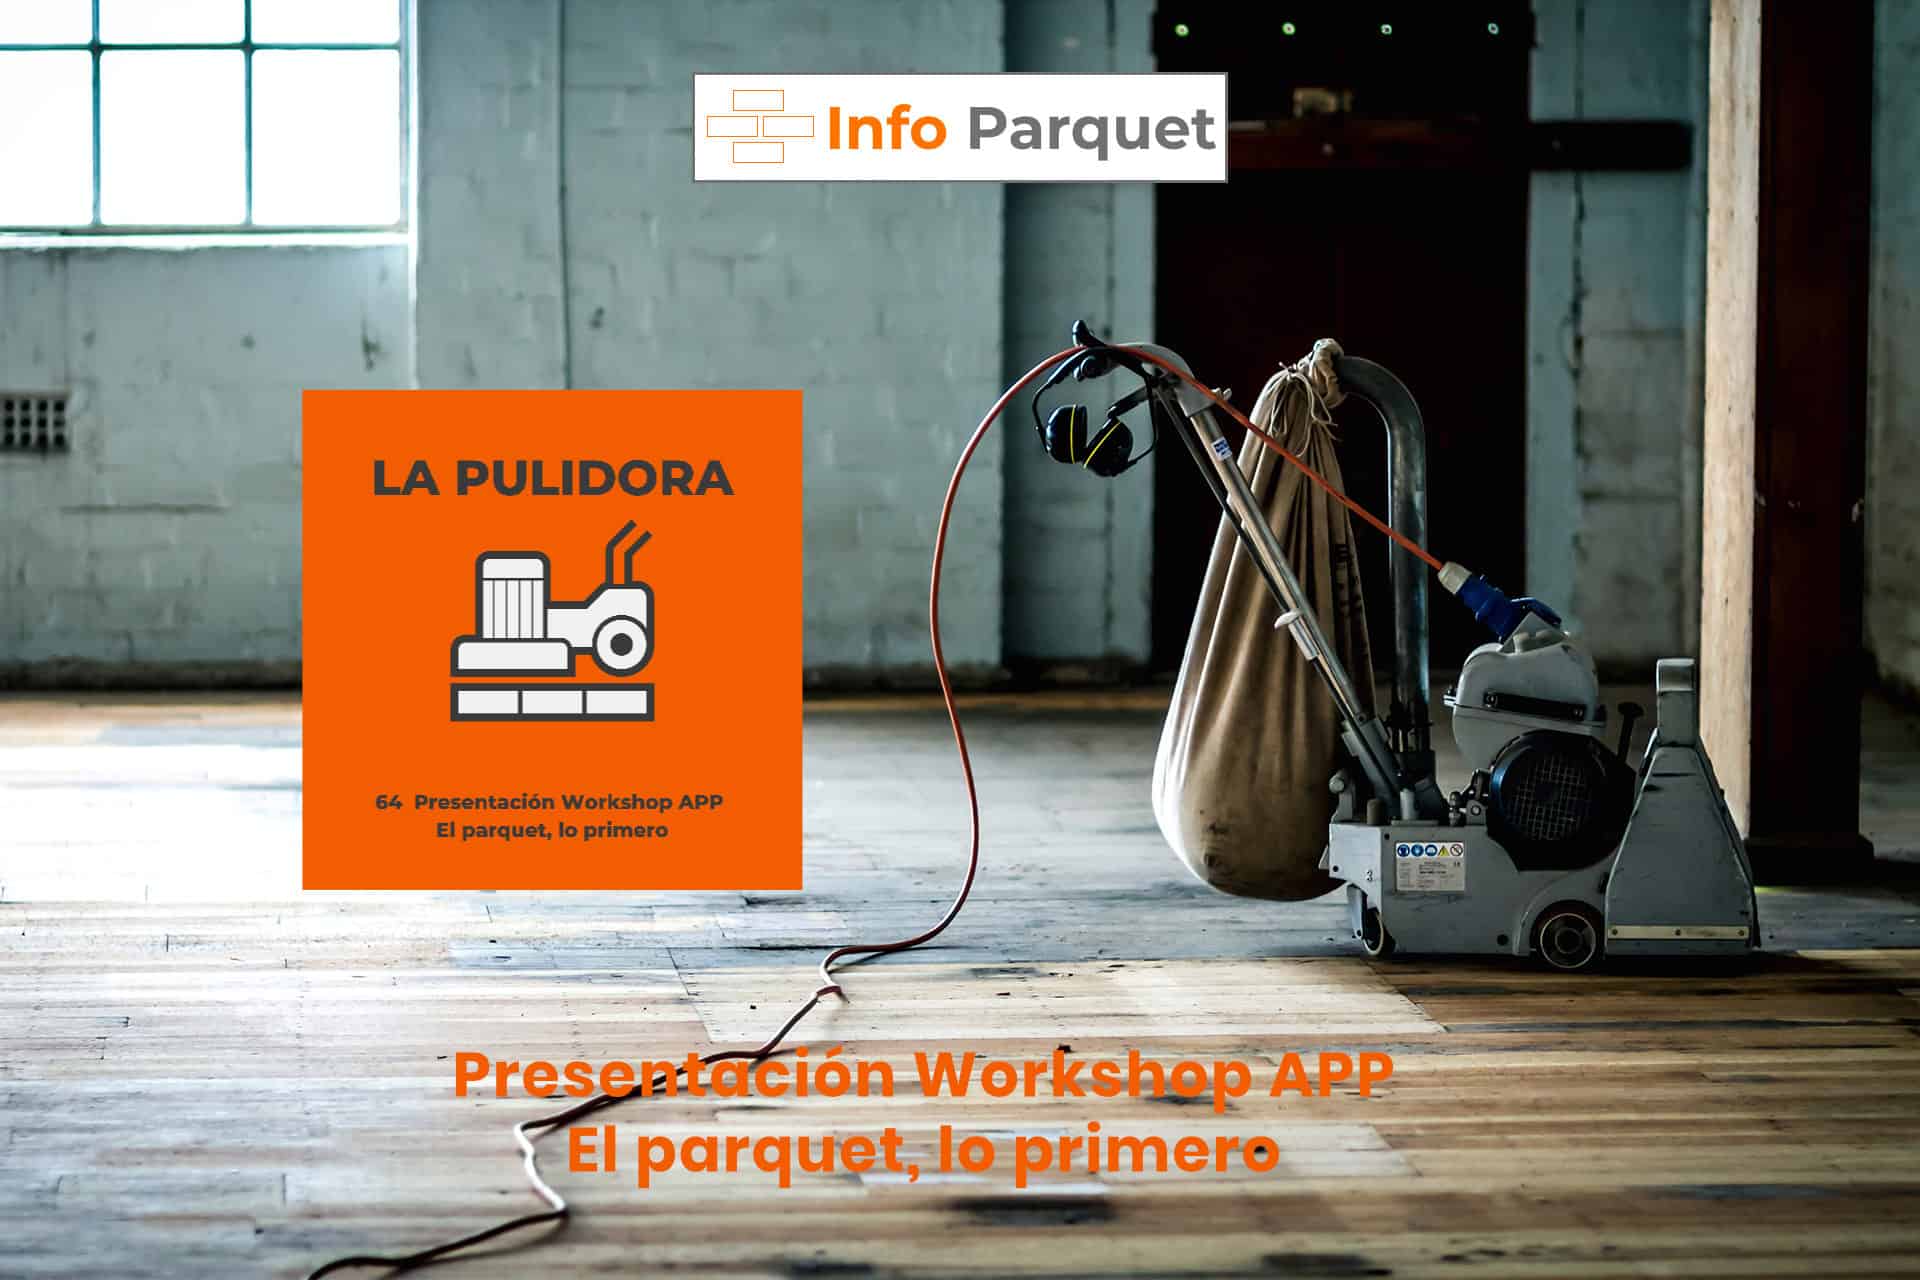 Presentación Workshop APP El parquet, lo primero